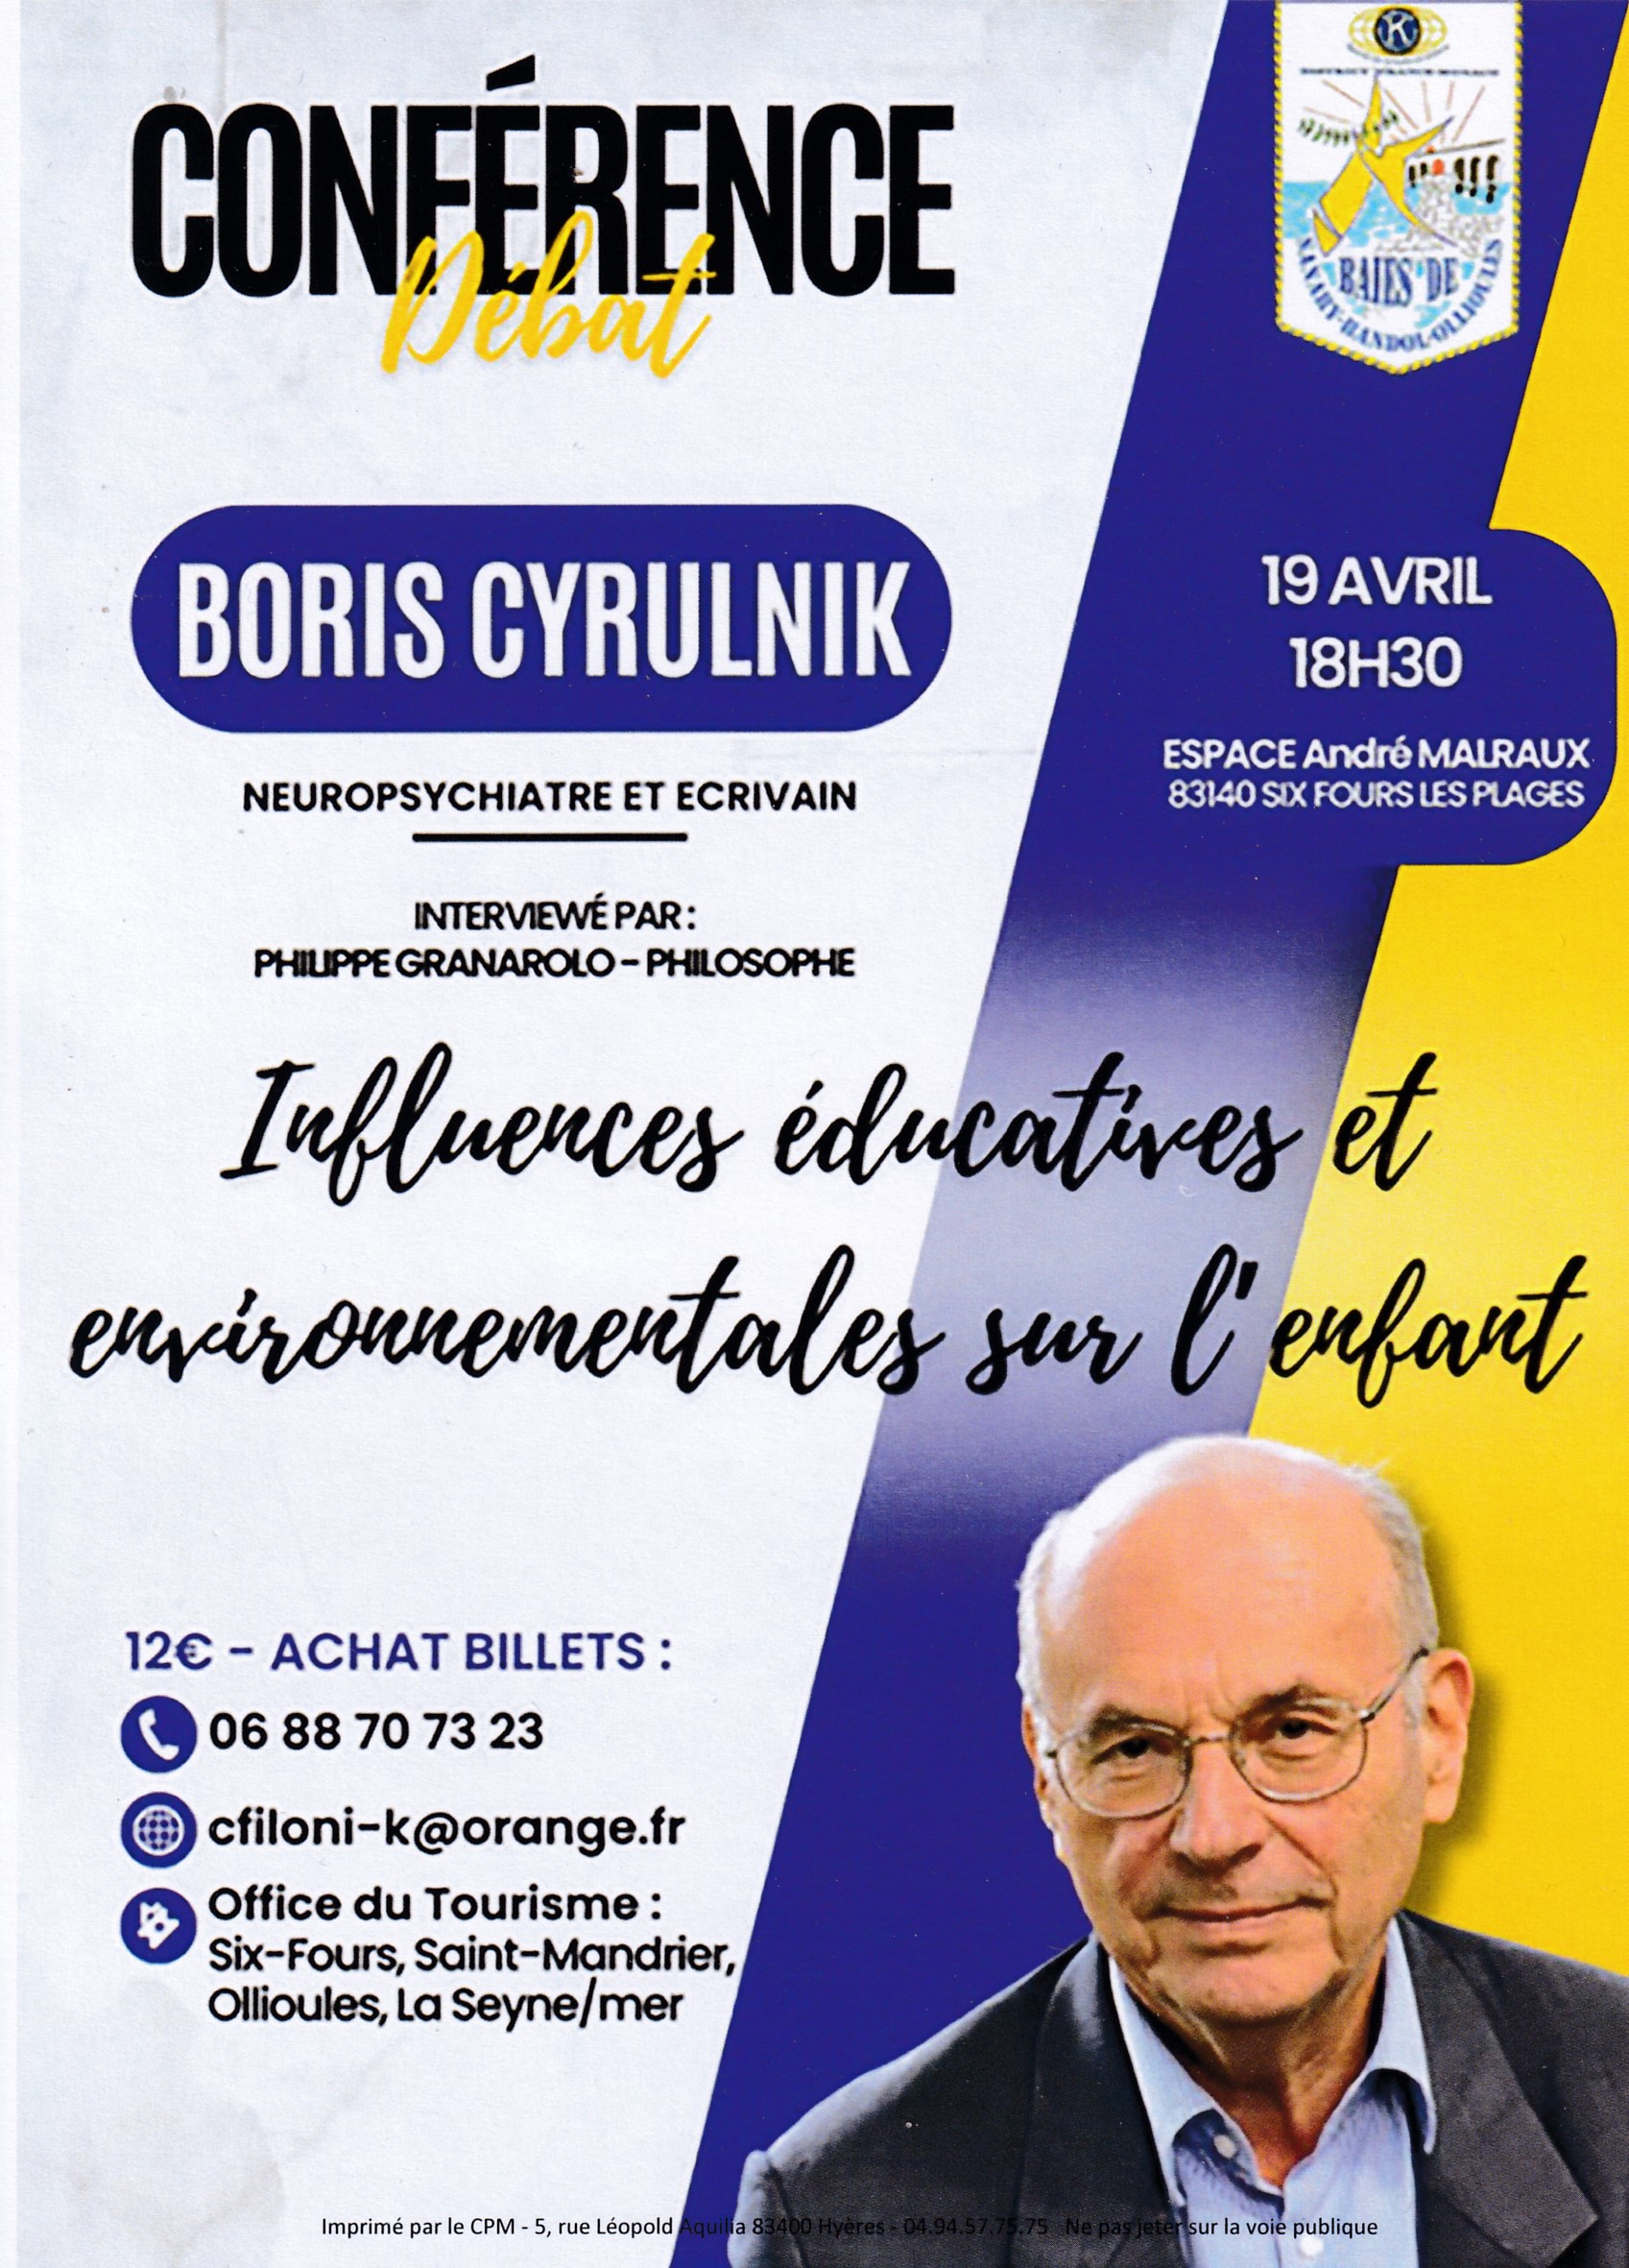 Conférence-débat avec Boris Cyrulnik, le 19 avril prochain